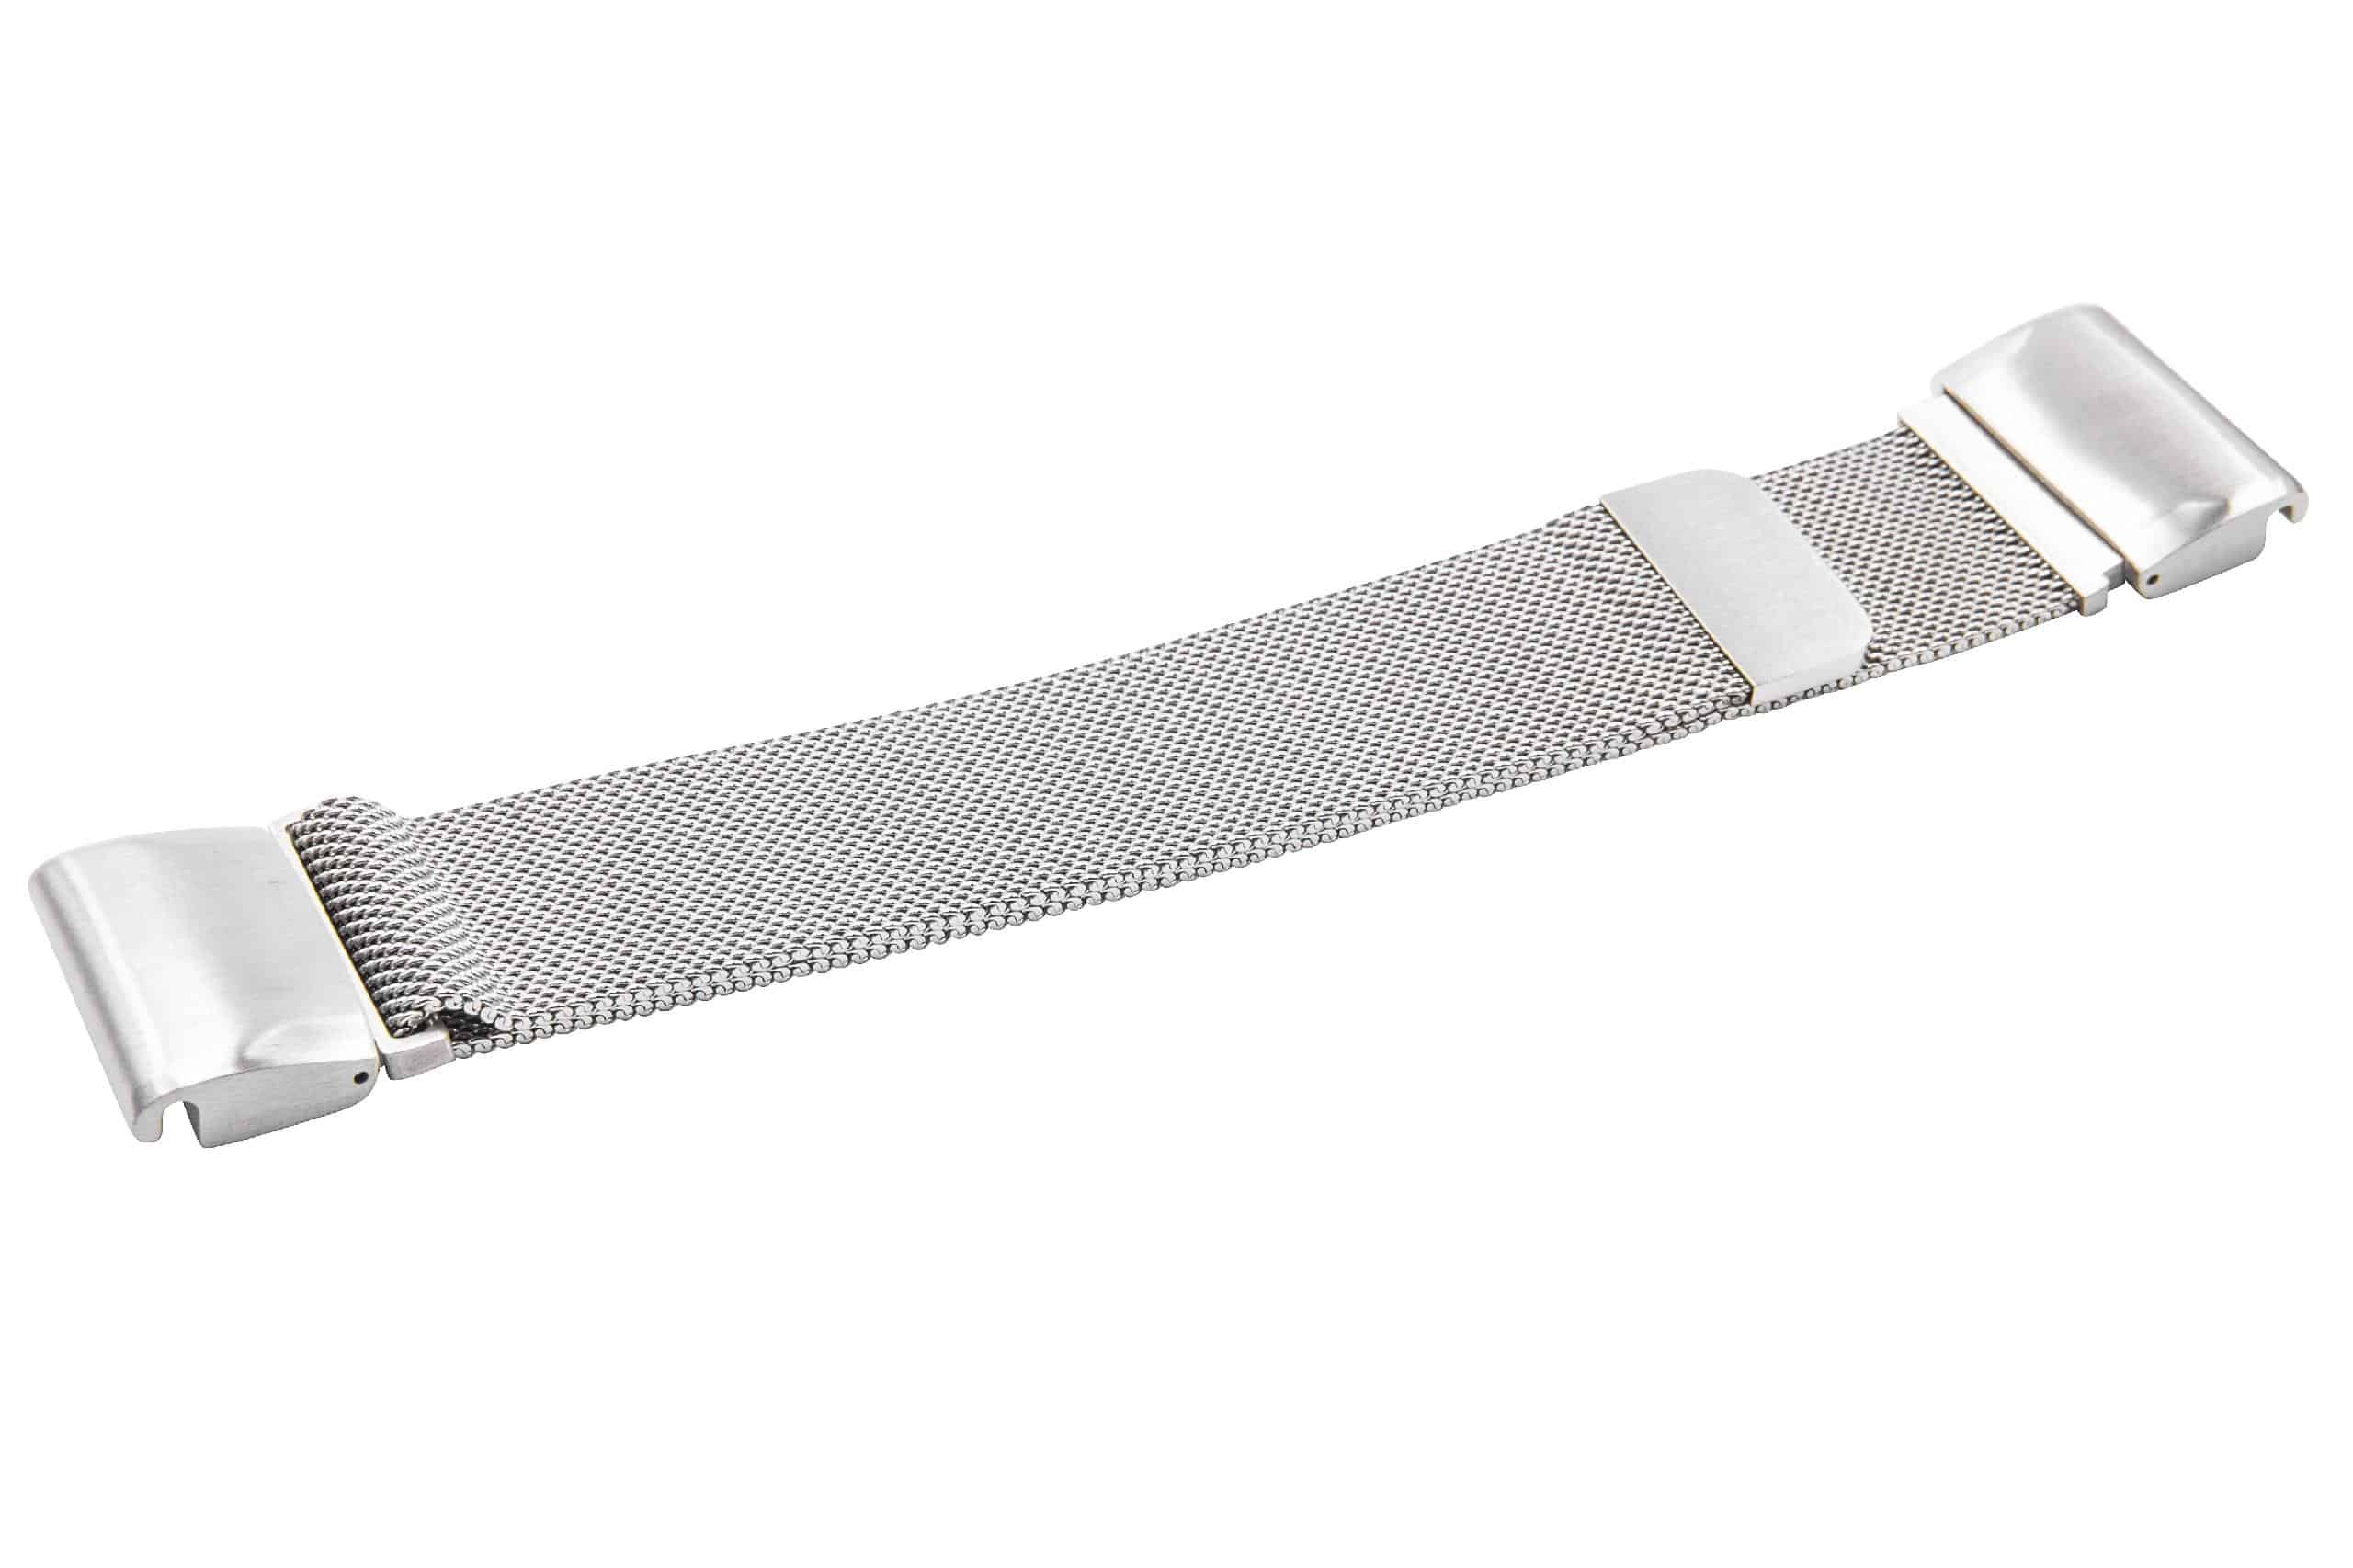 Armband für Garmin Descent Smartwatch u.a. - Bis 265 mm Gelenkumfang, Edelstahl, silber